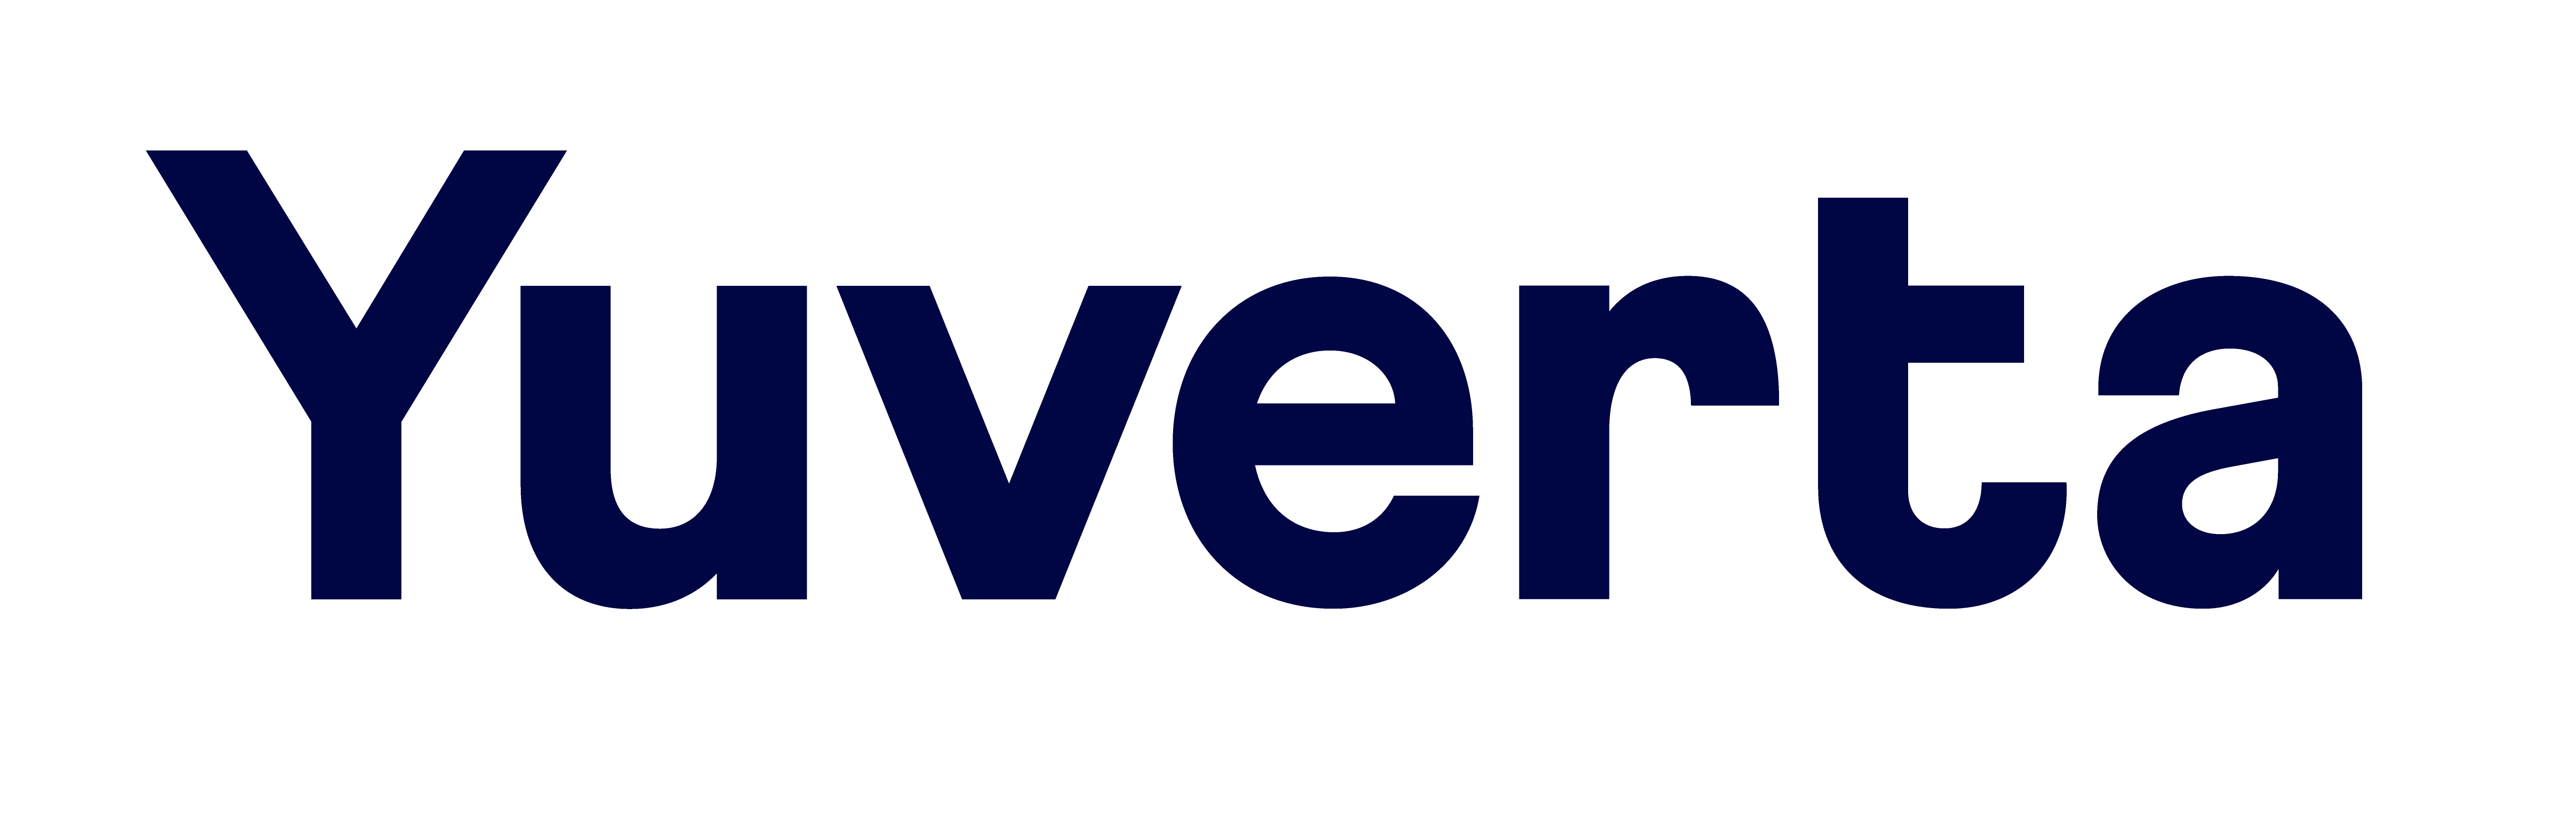 Yuverta - Logo - Donker Blauw